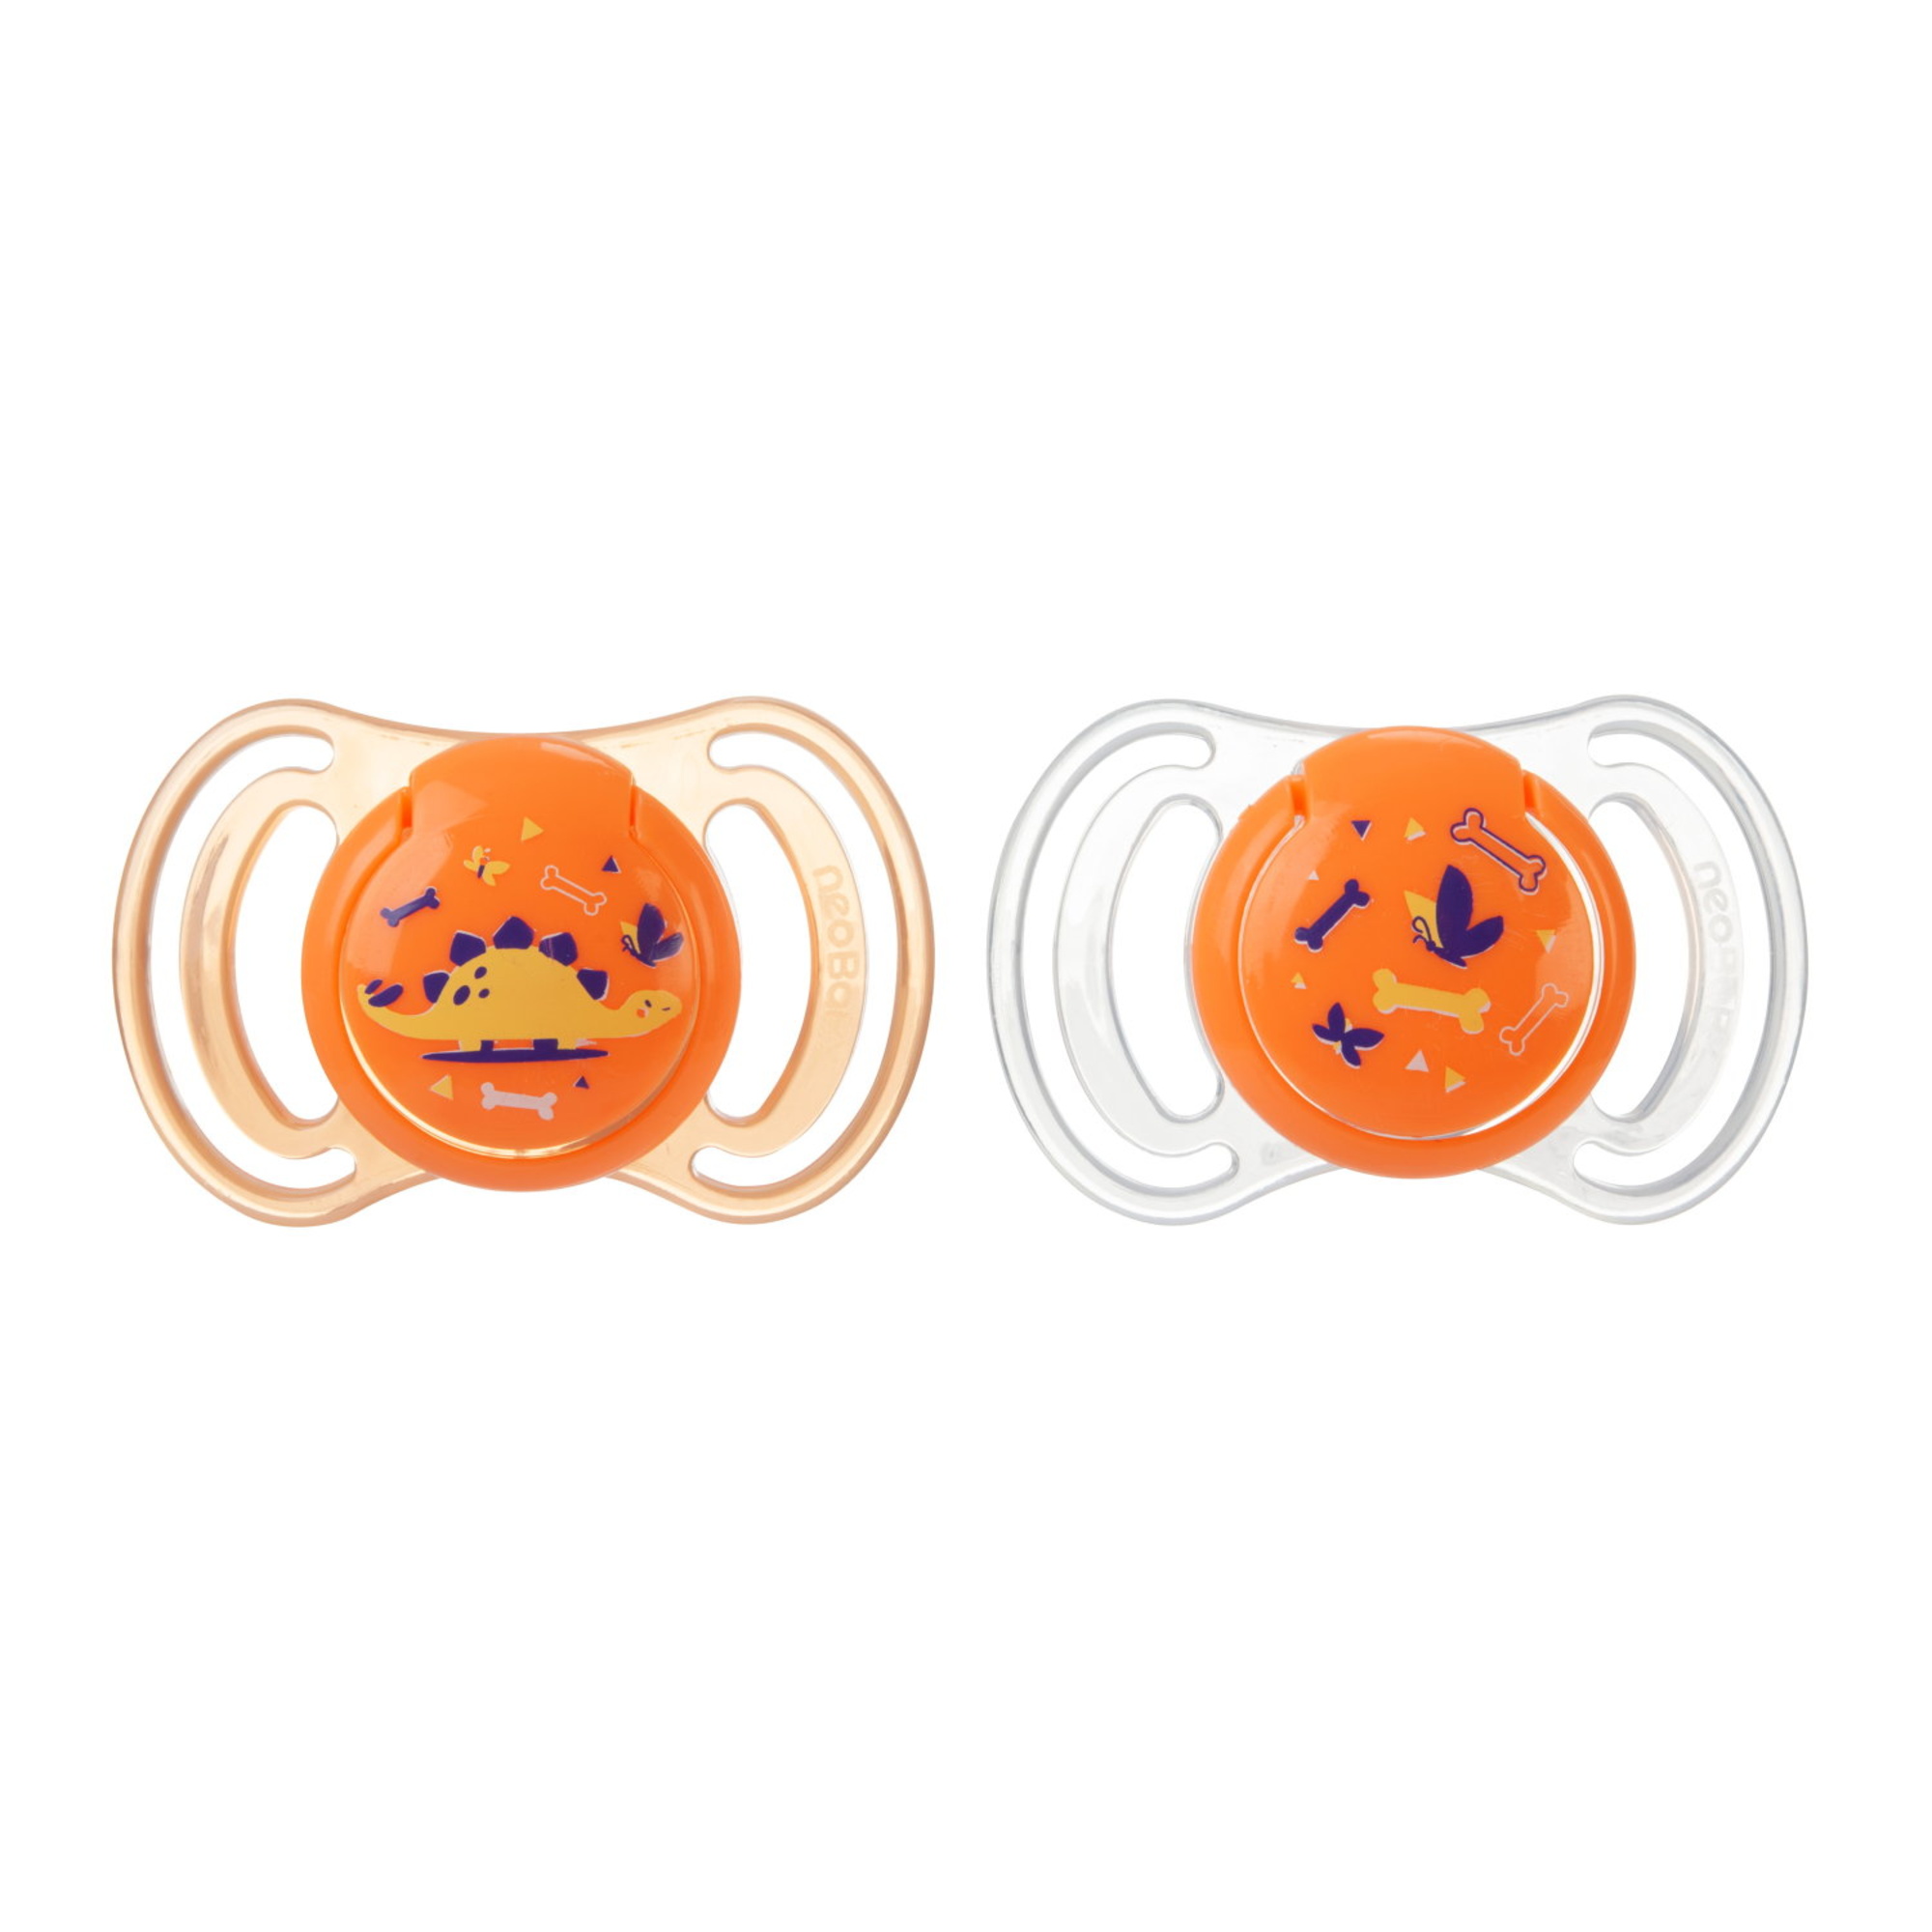 Neobaby  succhietto anatomico silicone medio 6m+ arancione 2pz - NEO BABY